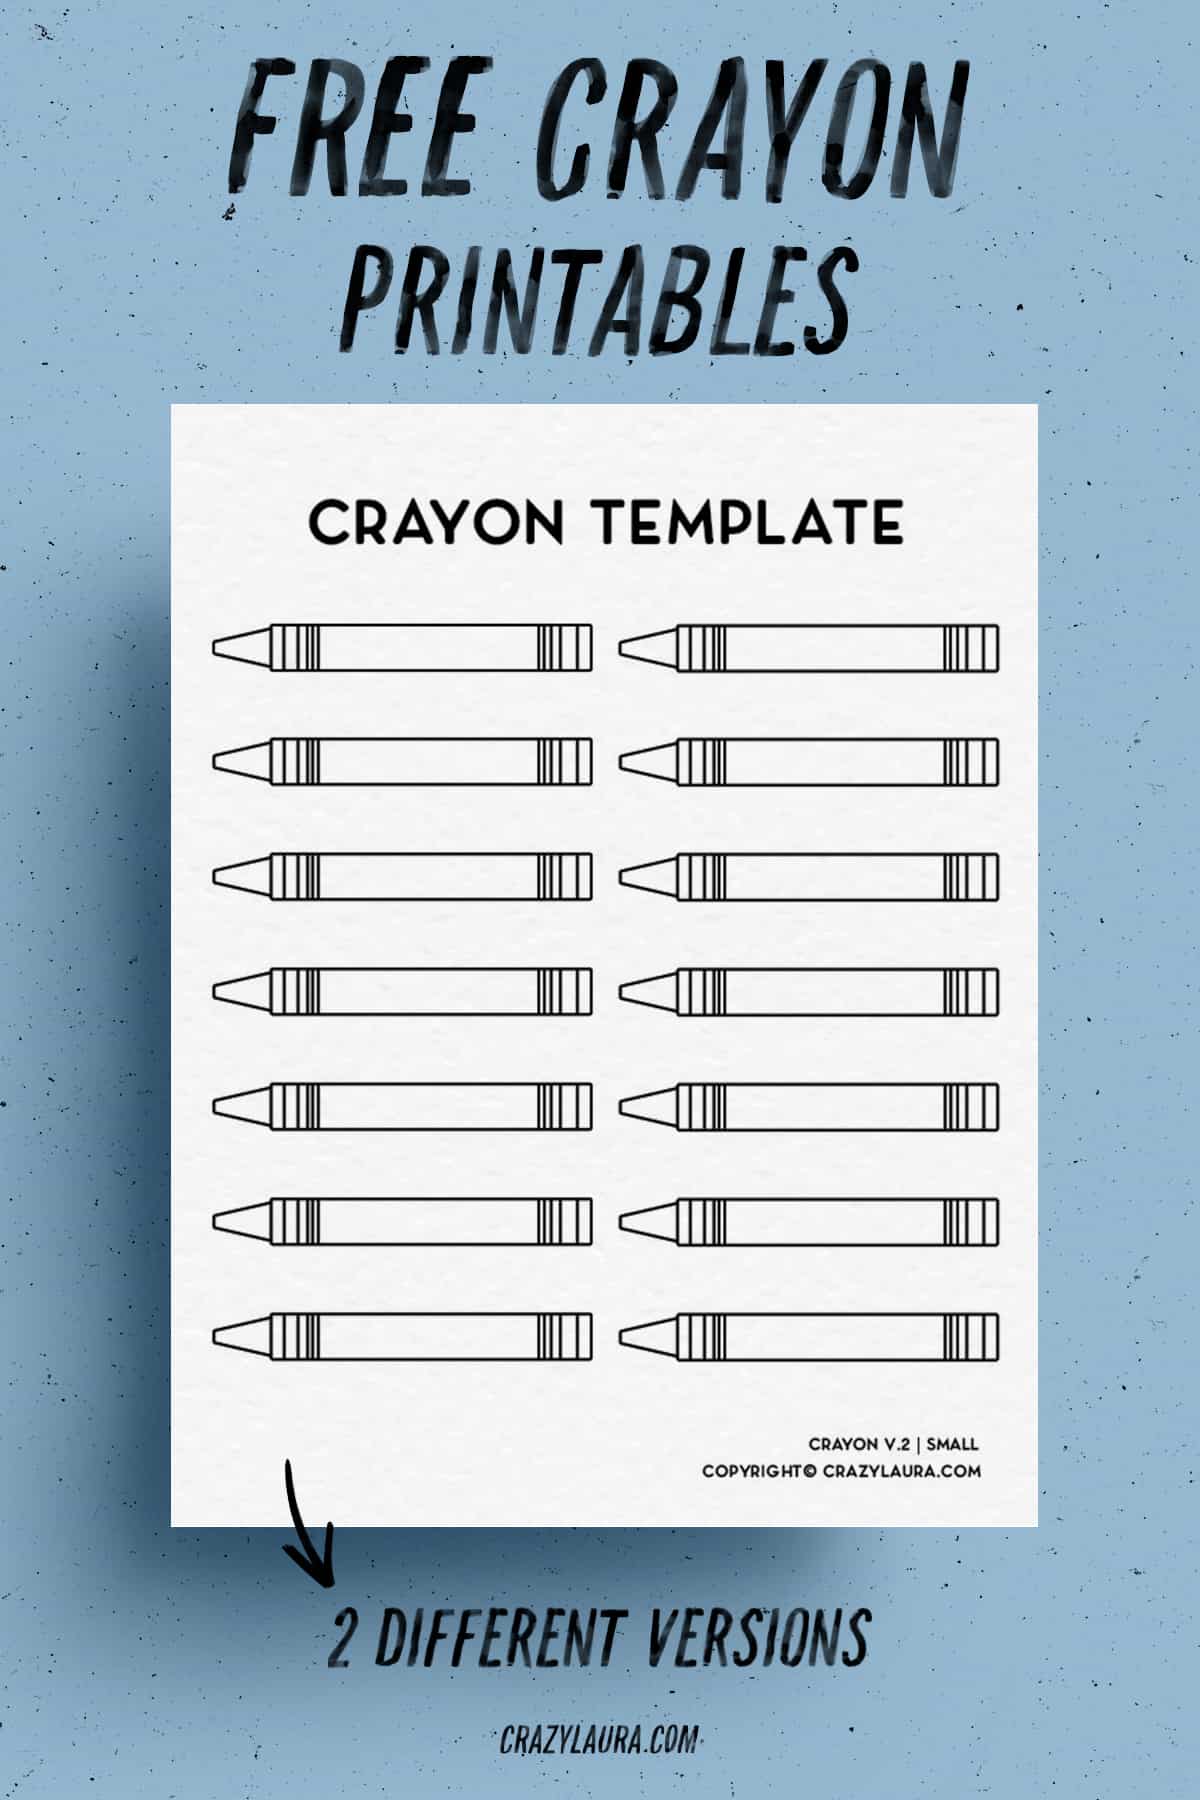 crayon templates to print